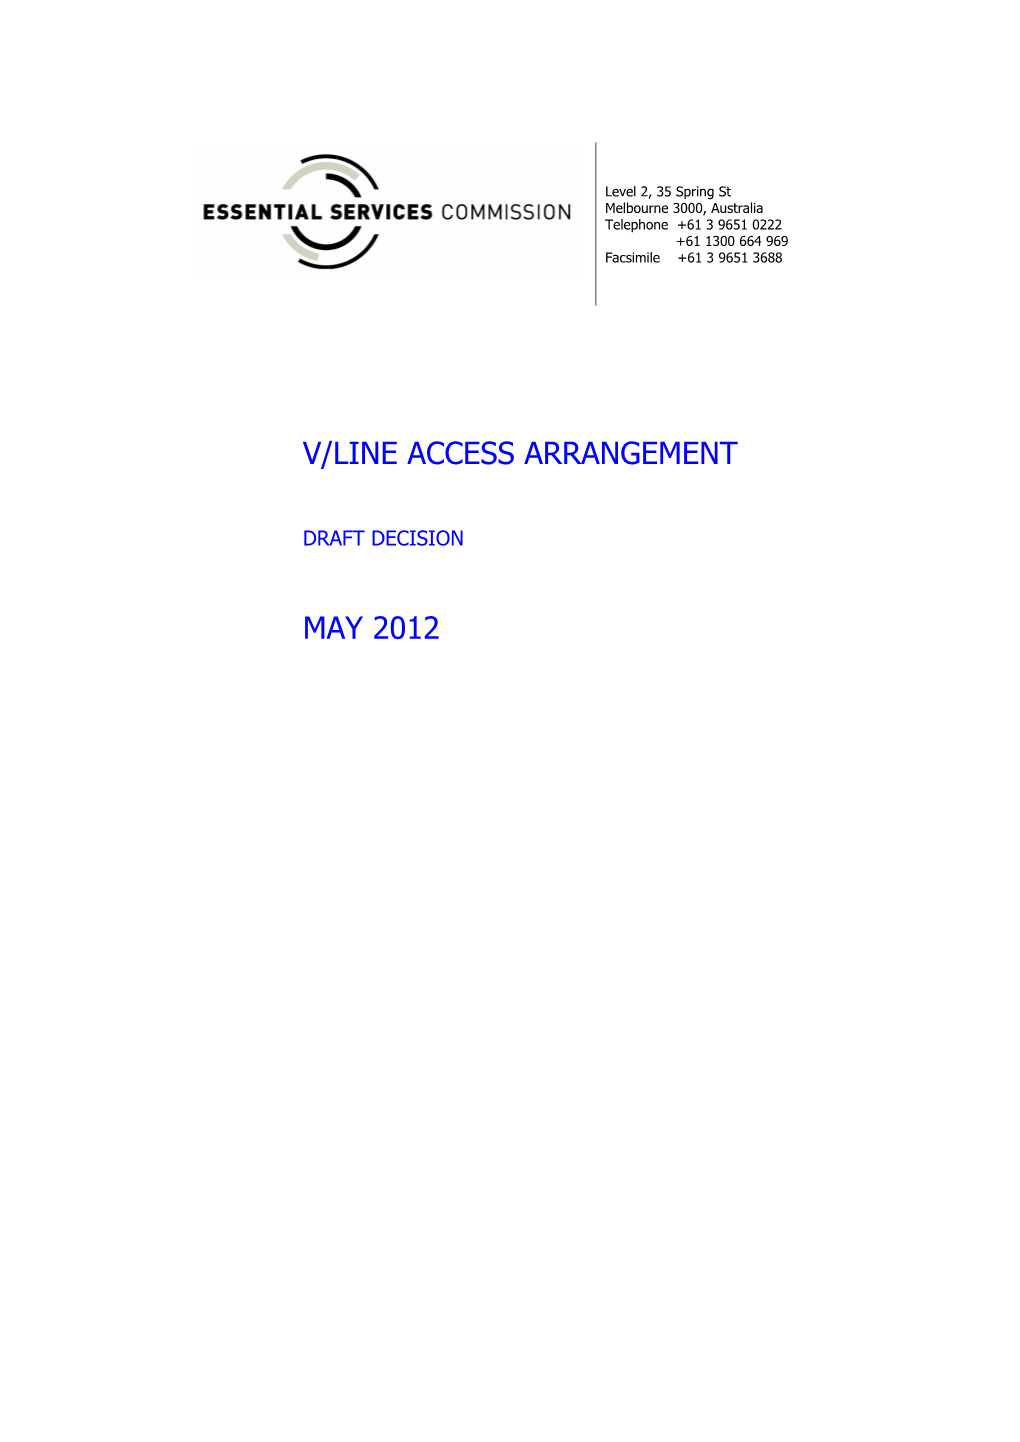 V/Line Access Arrangement May 2012